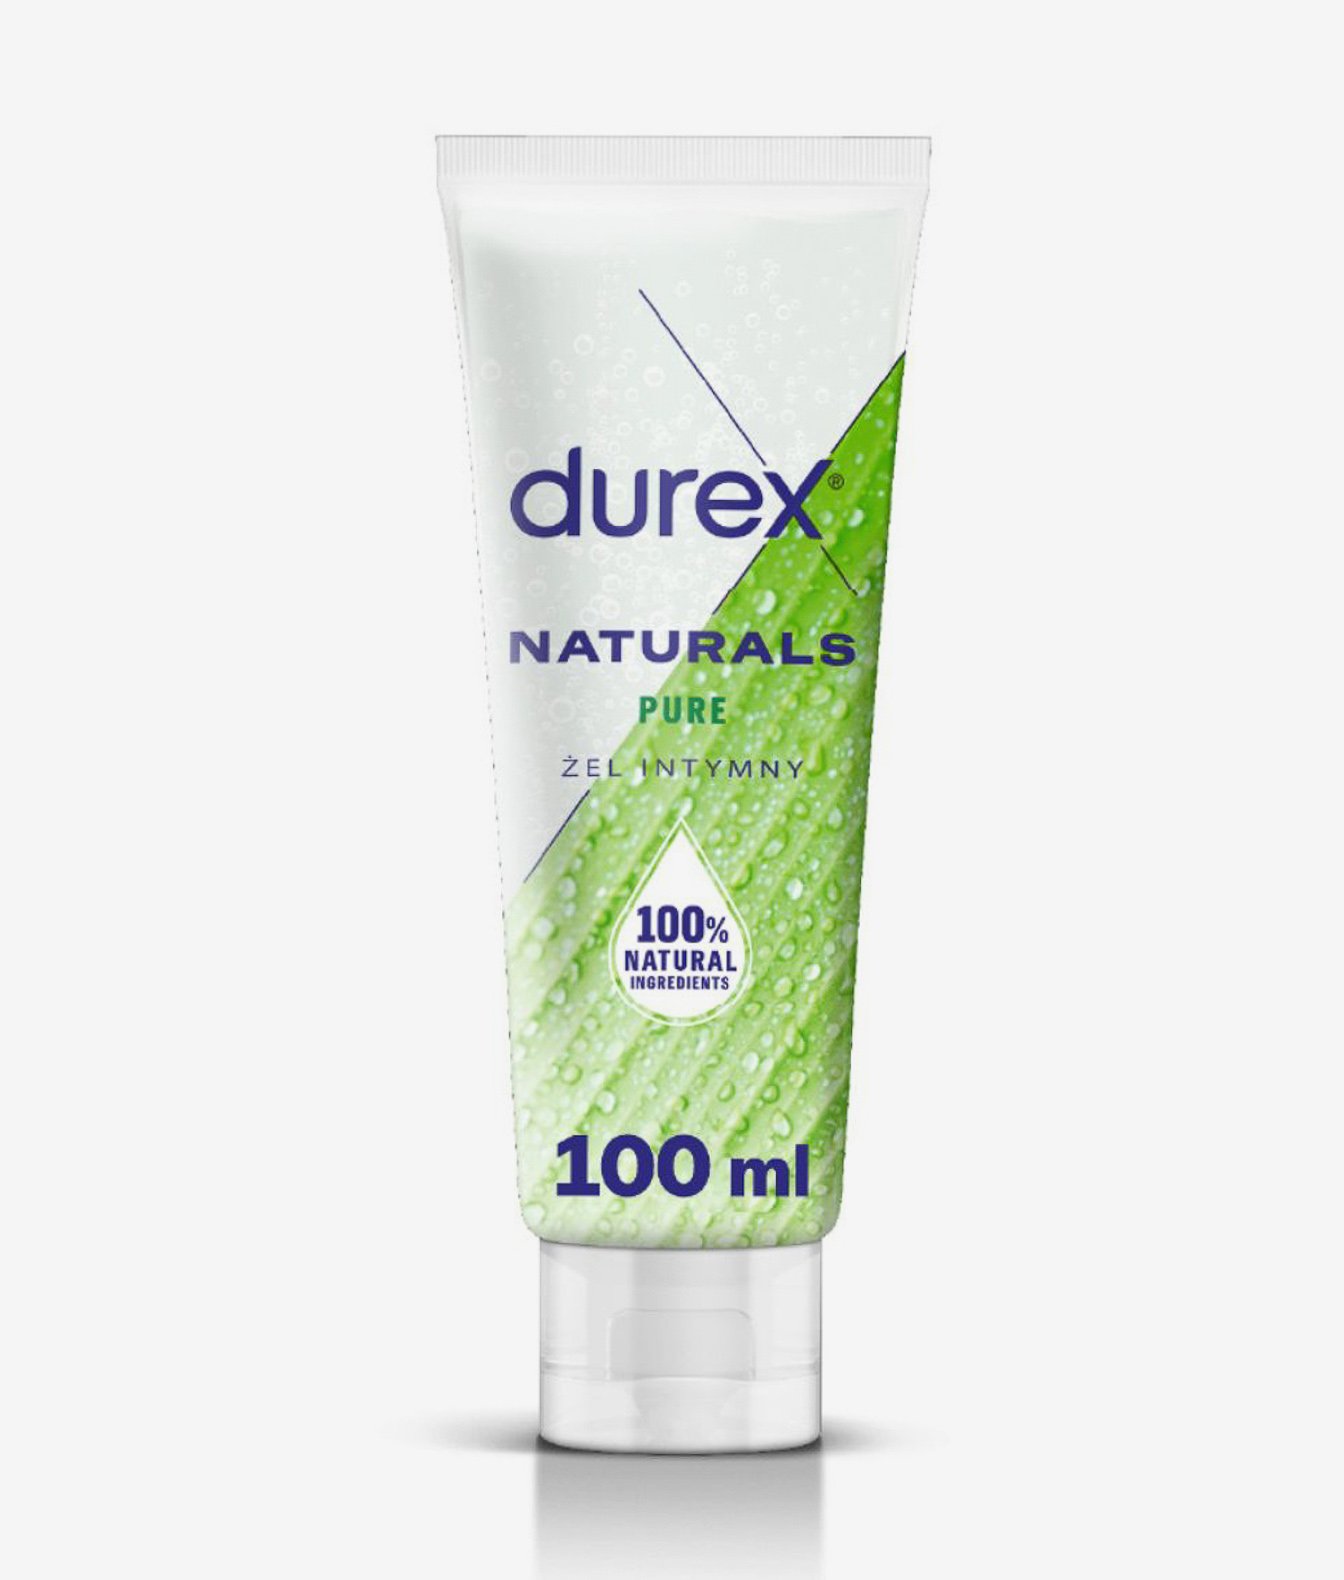 Durex Naturals Pure żel intymny 